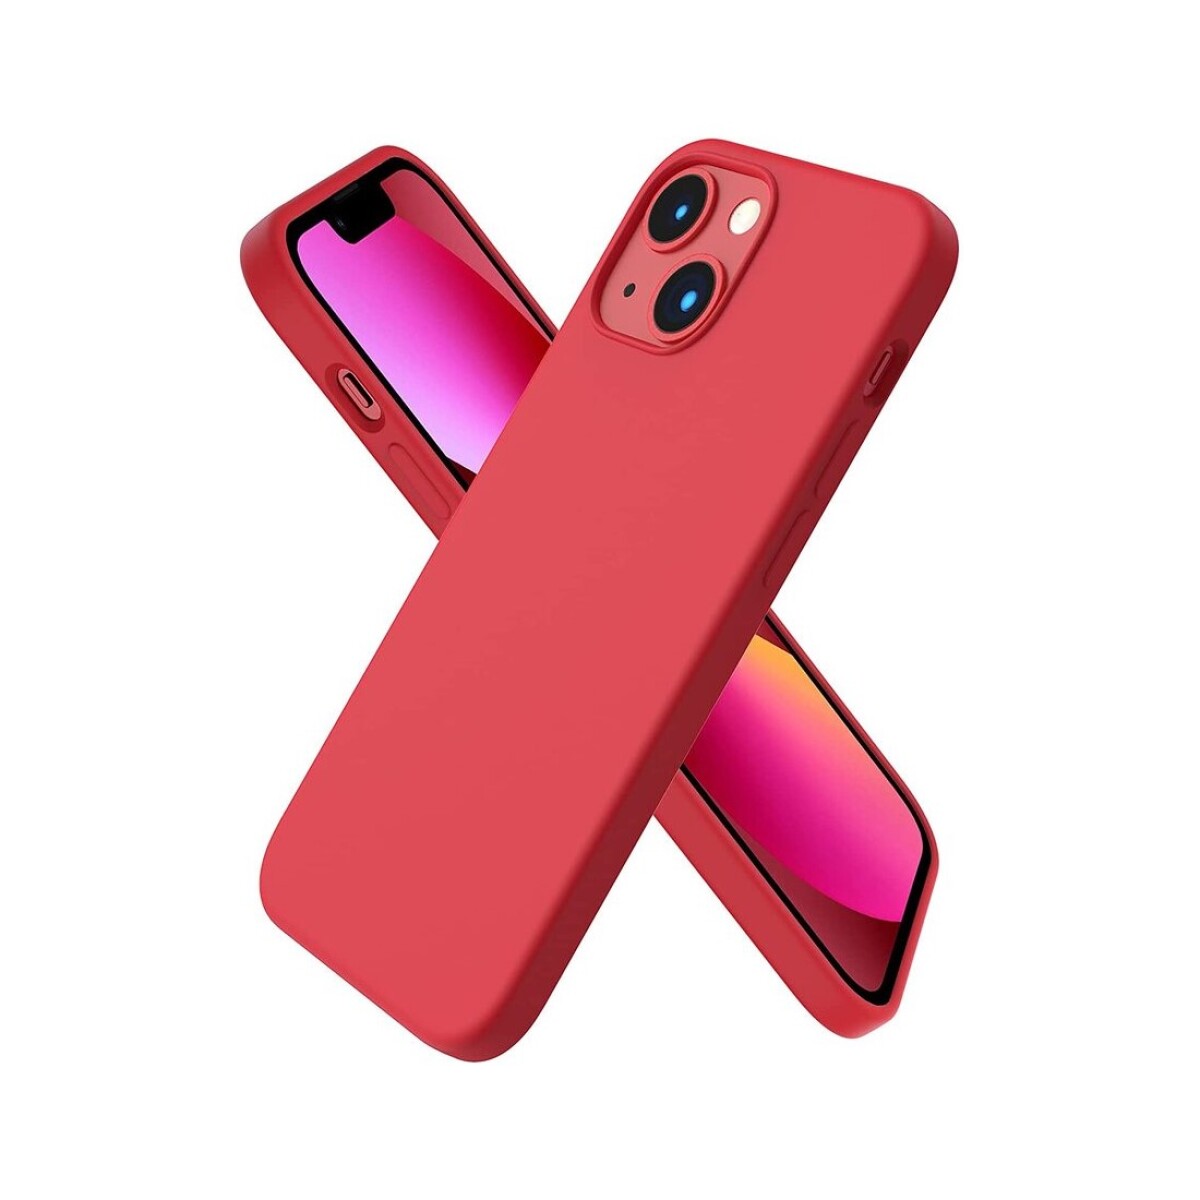 Protector case de silicona para iphone 13 mini - Rojo 